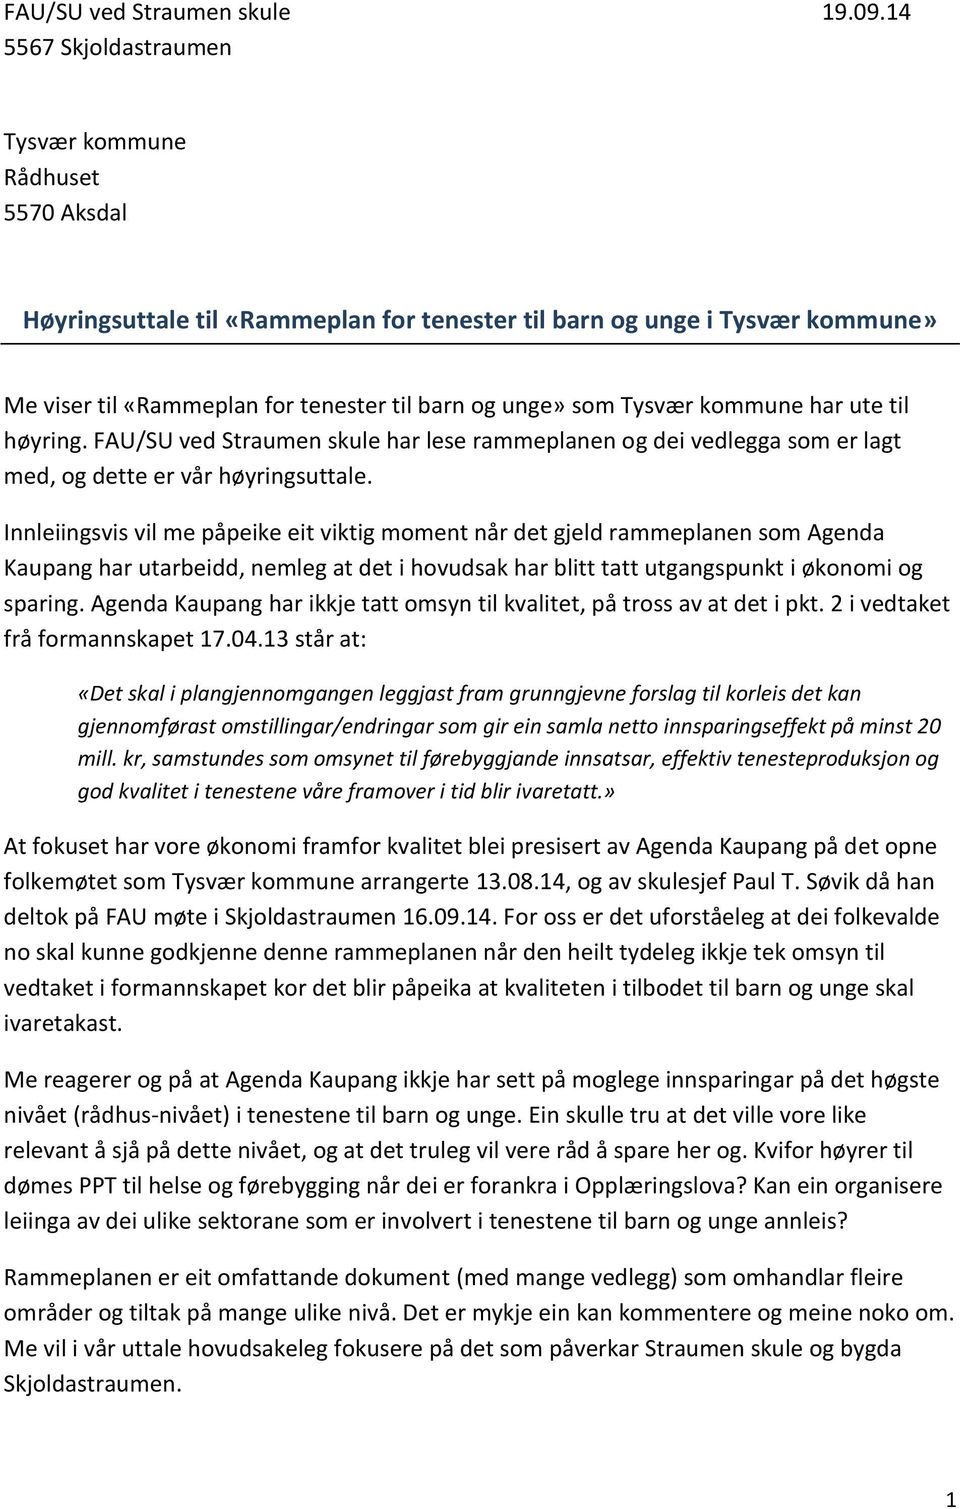 Tysvær kommune har ute til høyring. FAU/SU ved Straumen skule har lese rammeplanen og dei vedlegga som er lagt med, og dette er vår høyringsuttale.